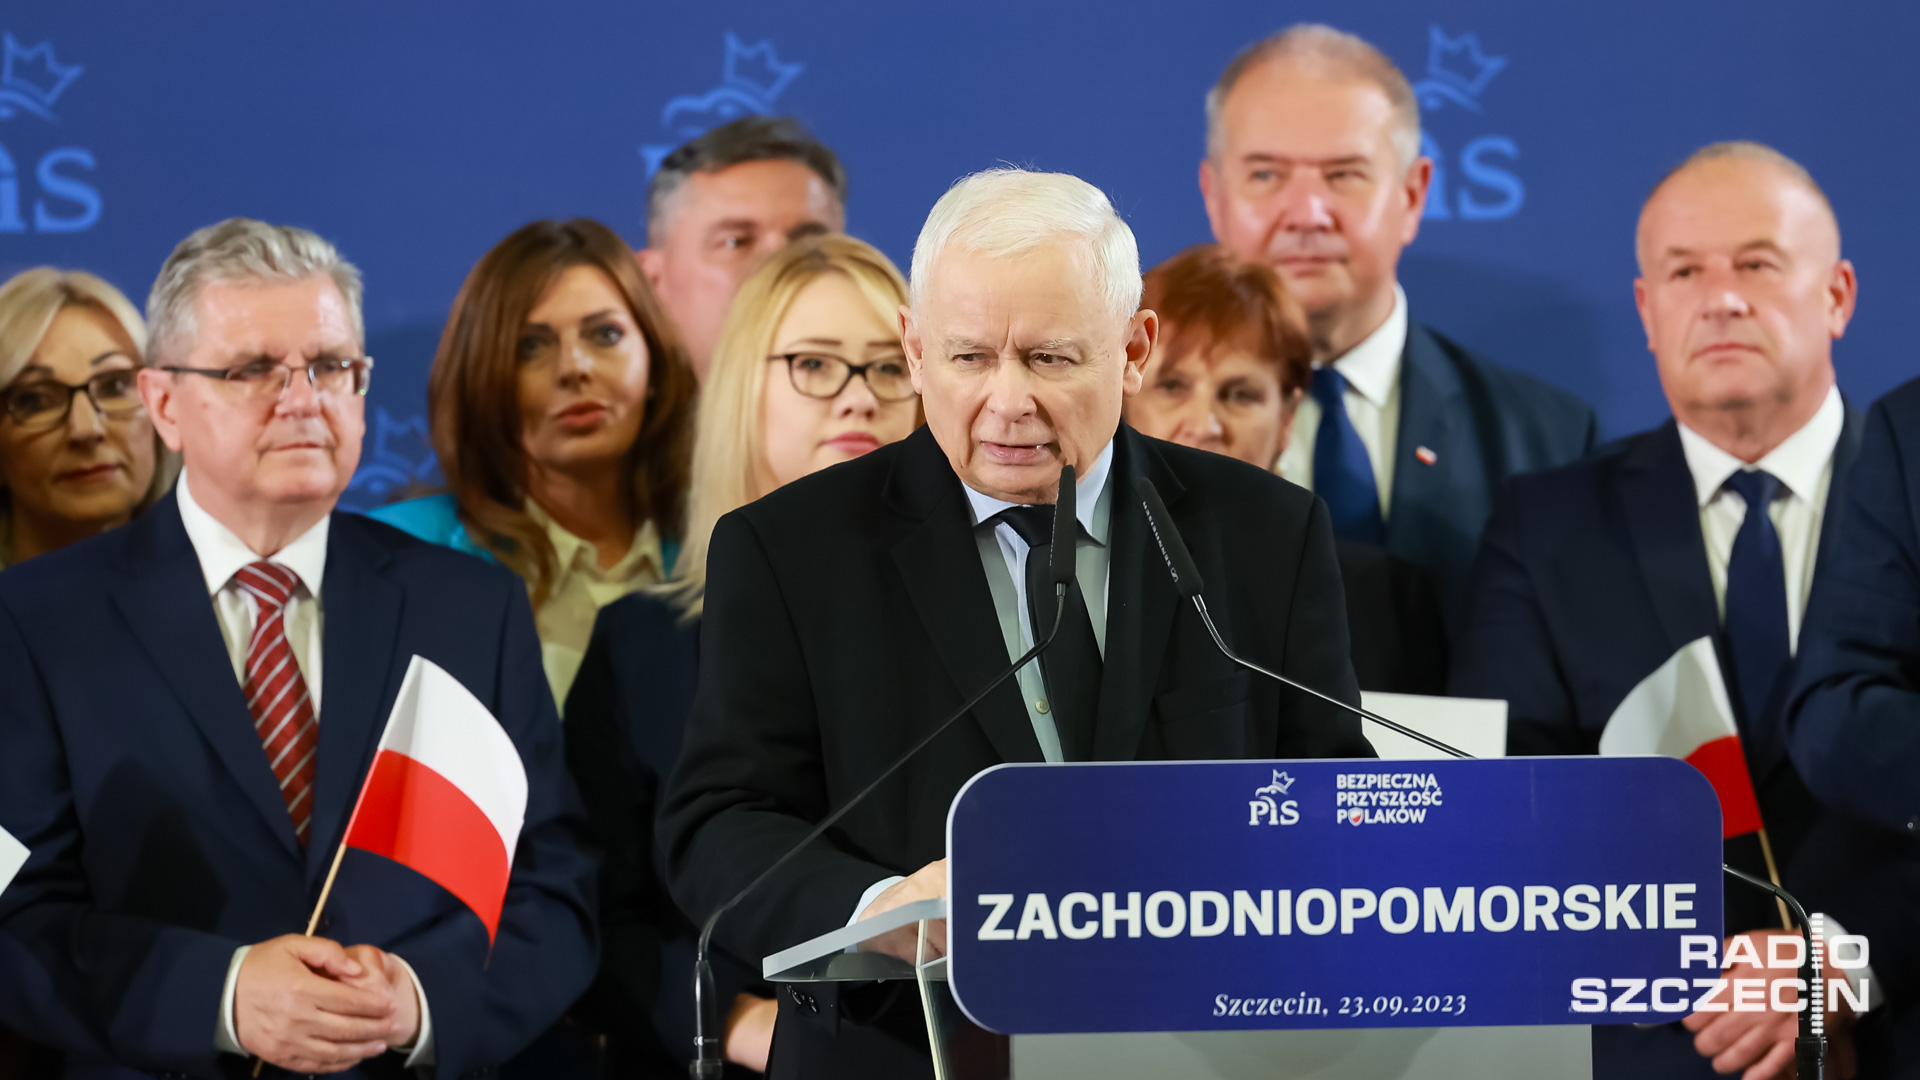 Chciałbym poznać treść dokumentów odnoszących się do rozmowy Putina z Tuskiem w sprawie rosyjskich kibiców Polsce - powiedział w sobotę prezes PiS Jarosław Kaczyński na konwencji wojewódzkiej w Szczecinie.